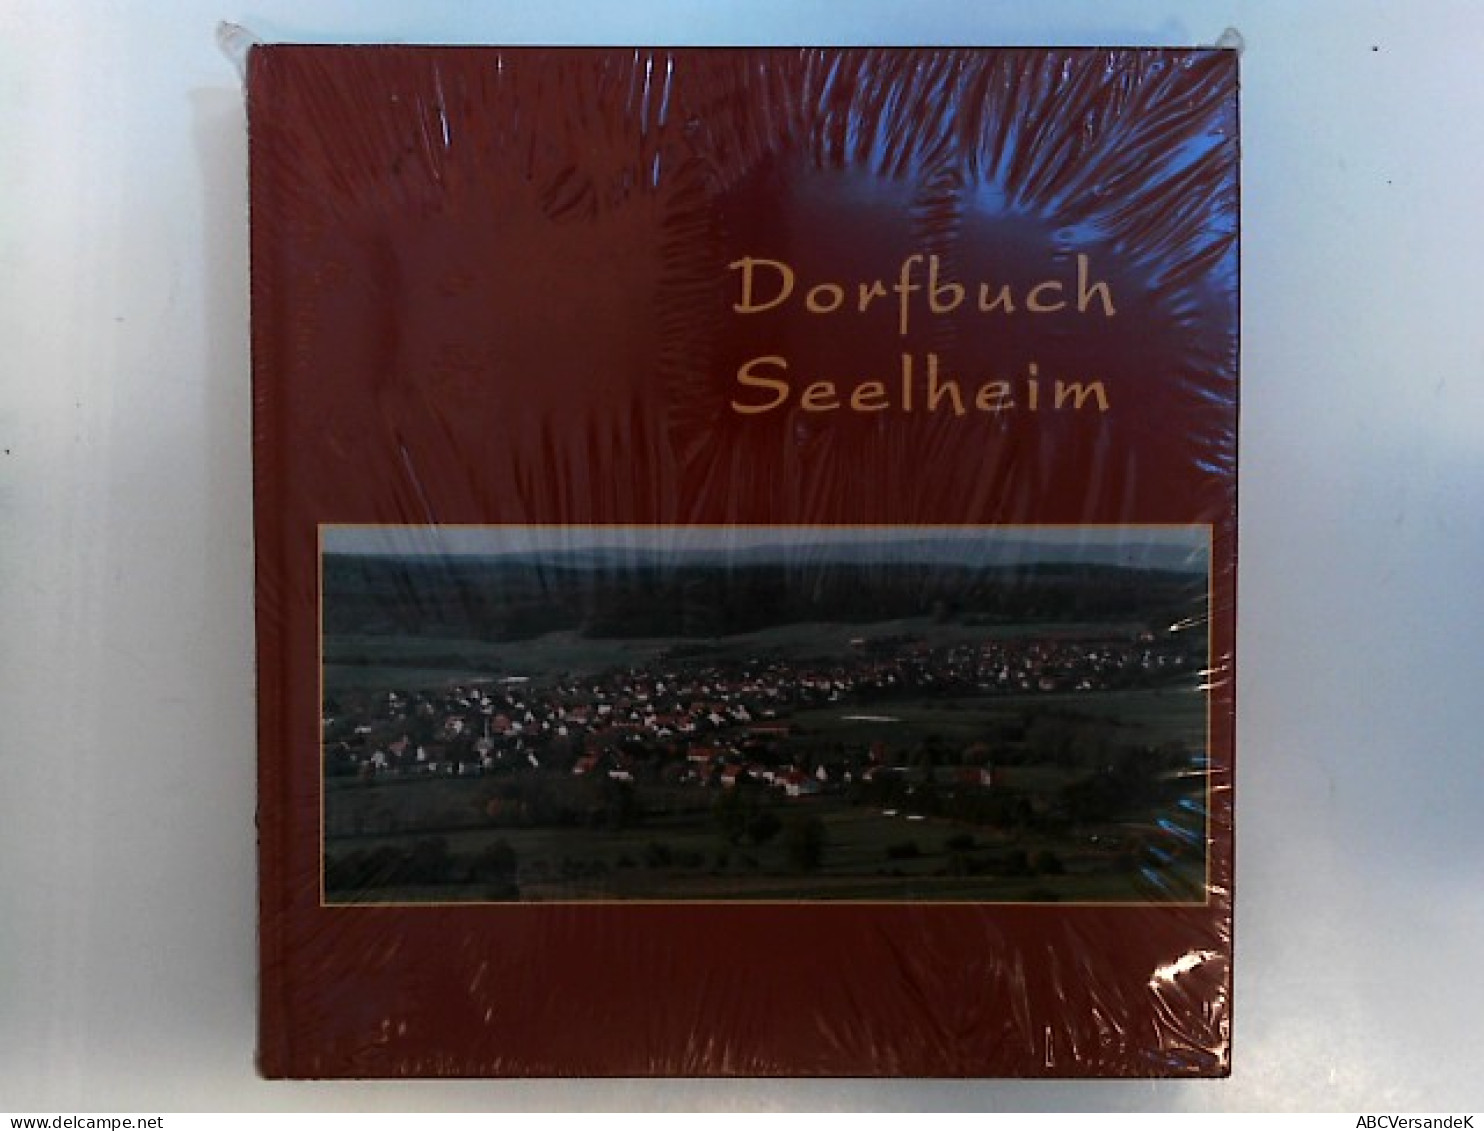 Dorfbuch Seelheim - Deutschland Gesamt